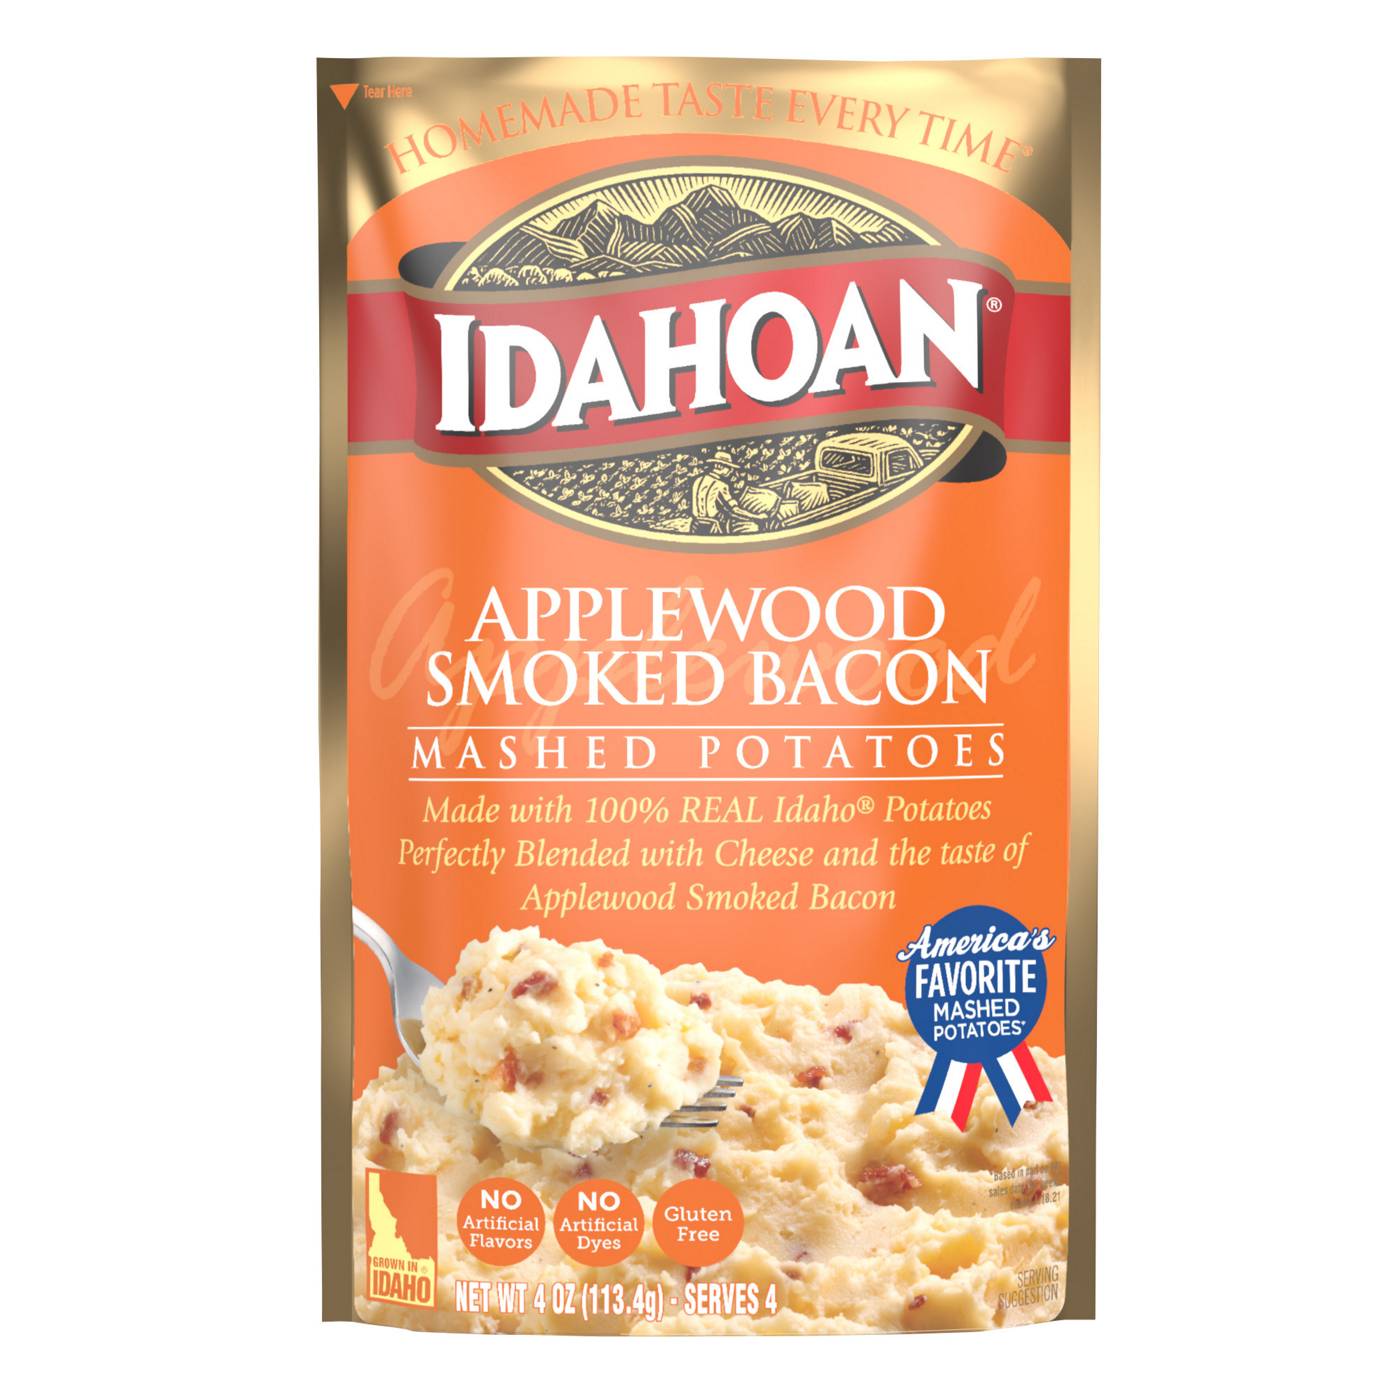 Idahoan Applewood Smoked Bacon Mashed Potatoes; image 1 of 4